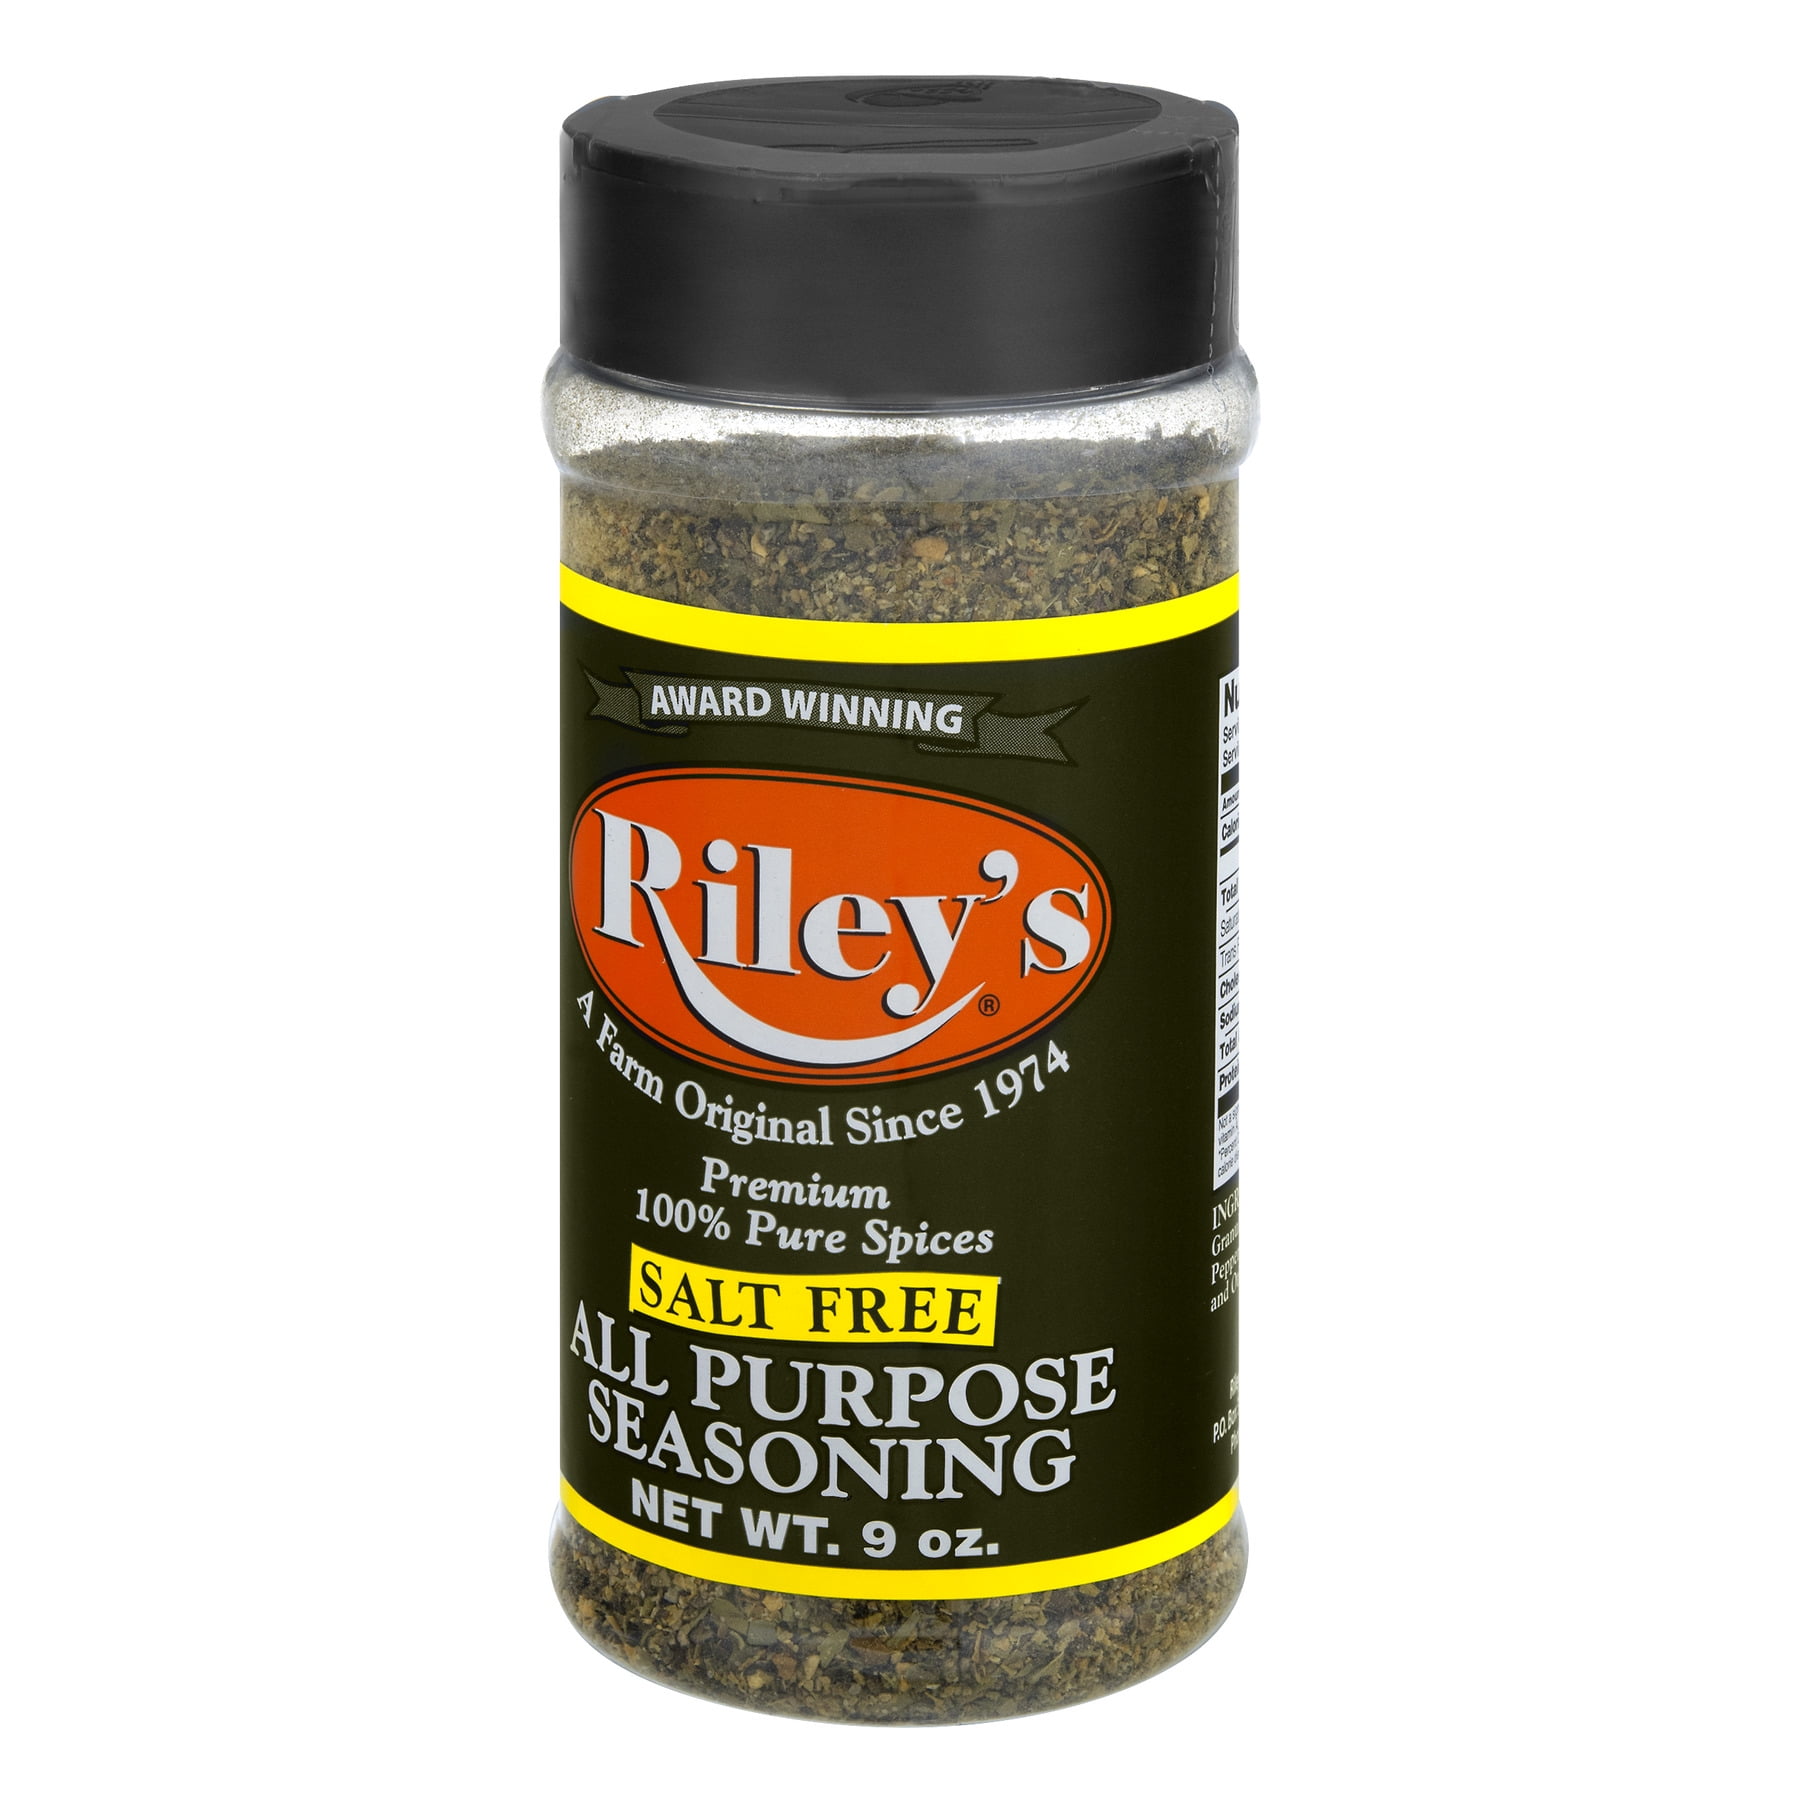 Salt-Free Cajun – Riley's Seasonings